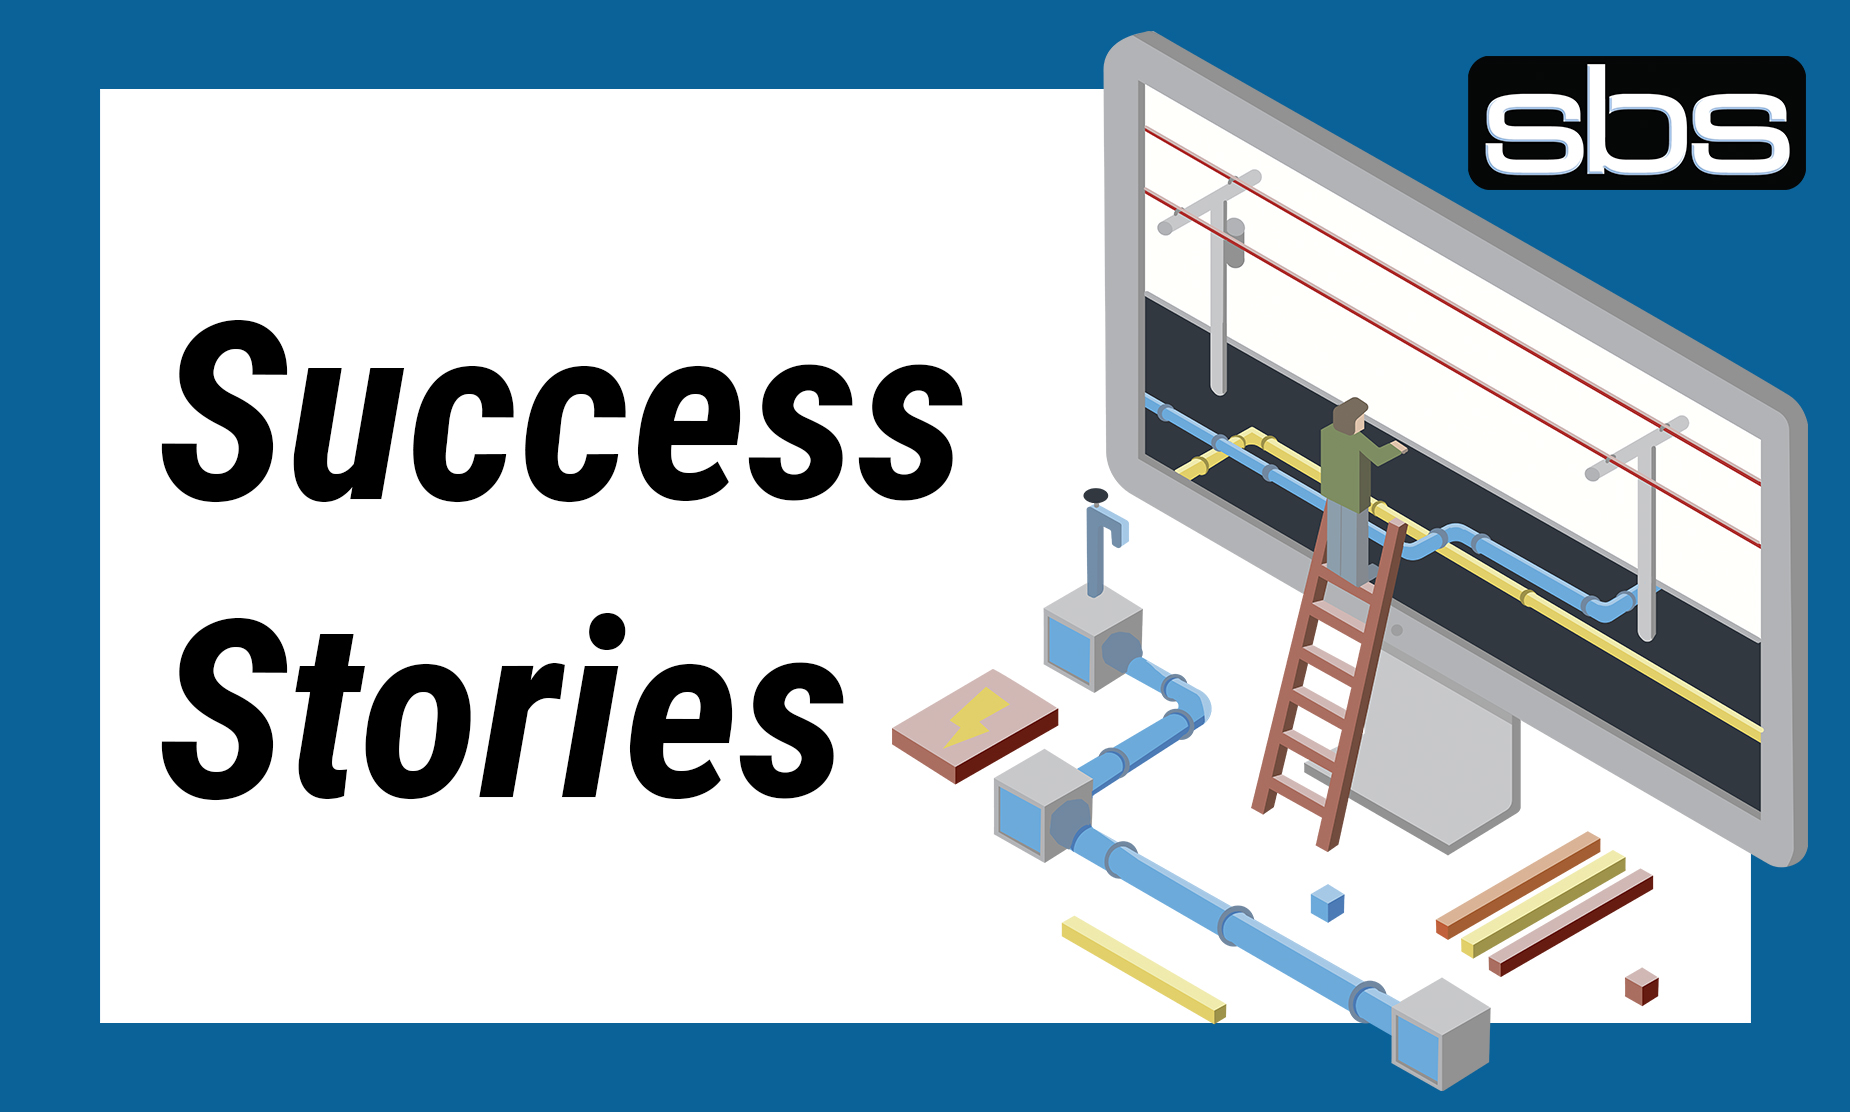 SBS Success Stories